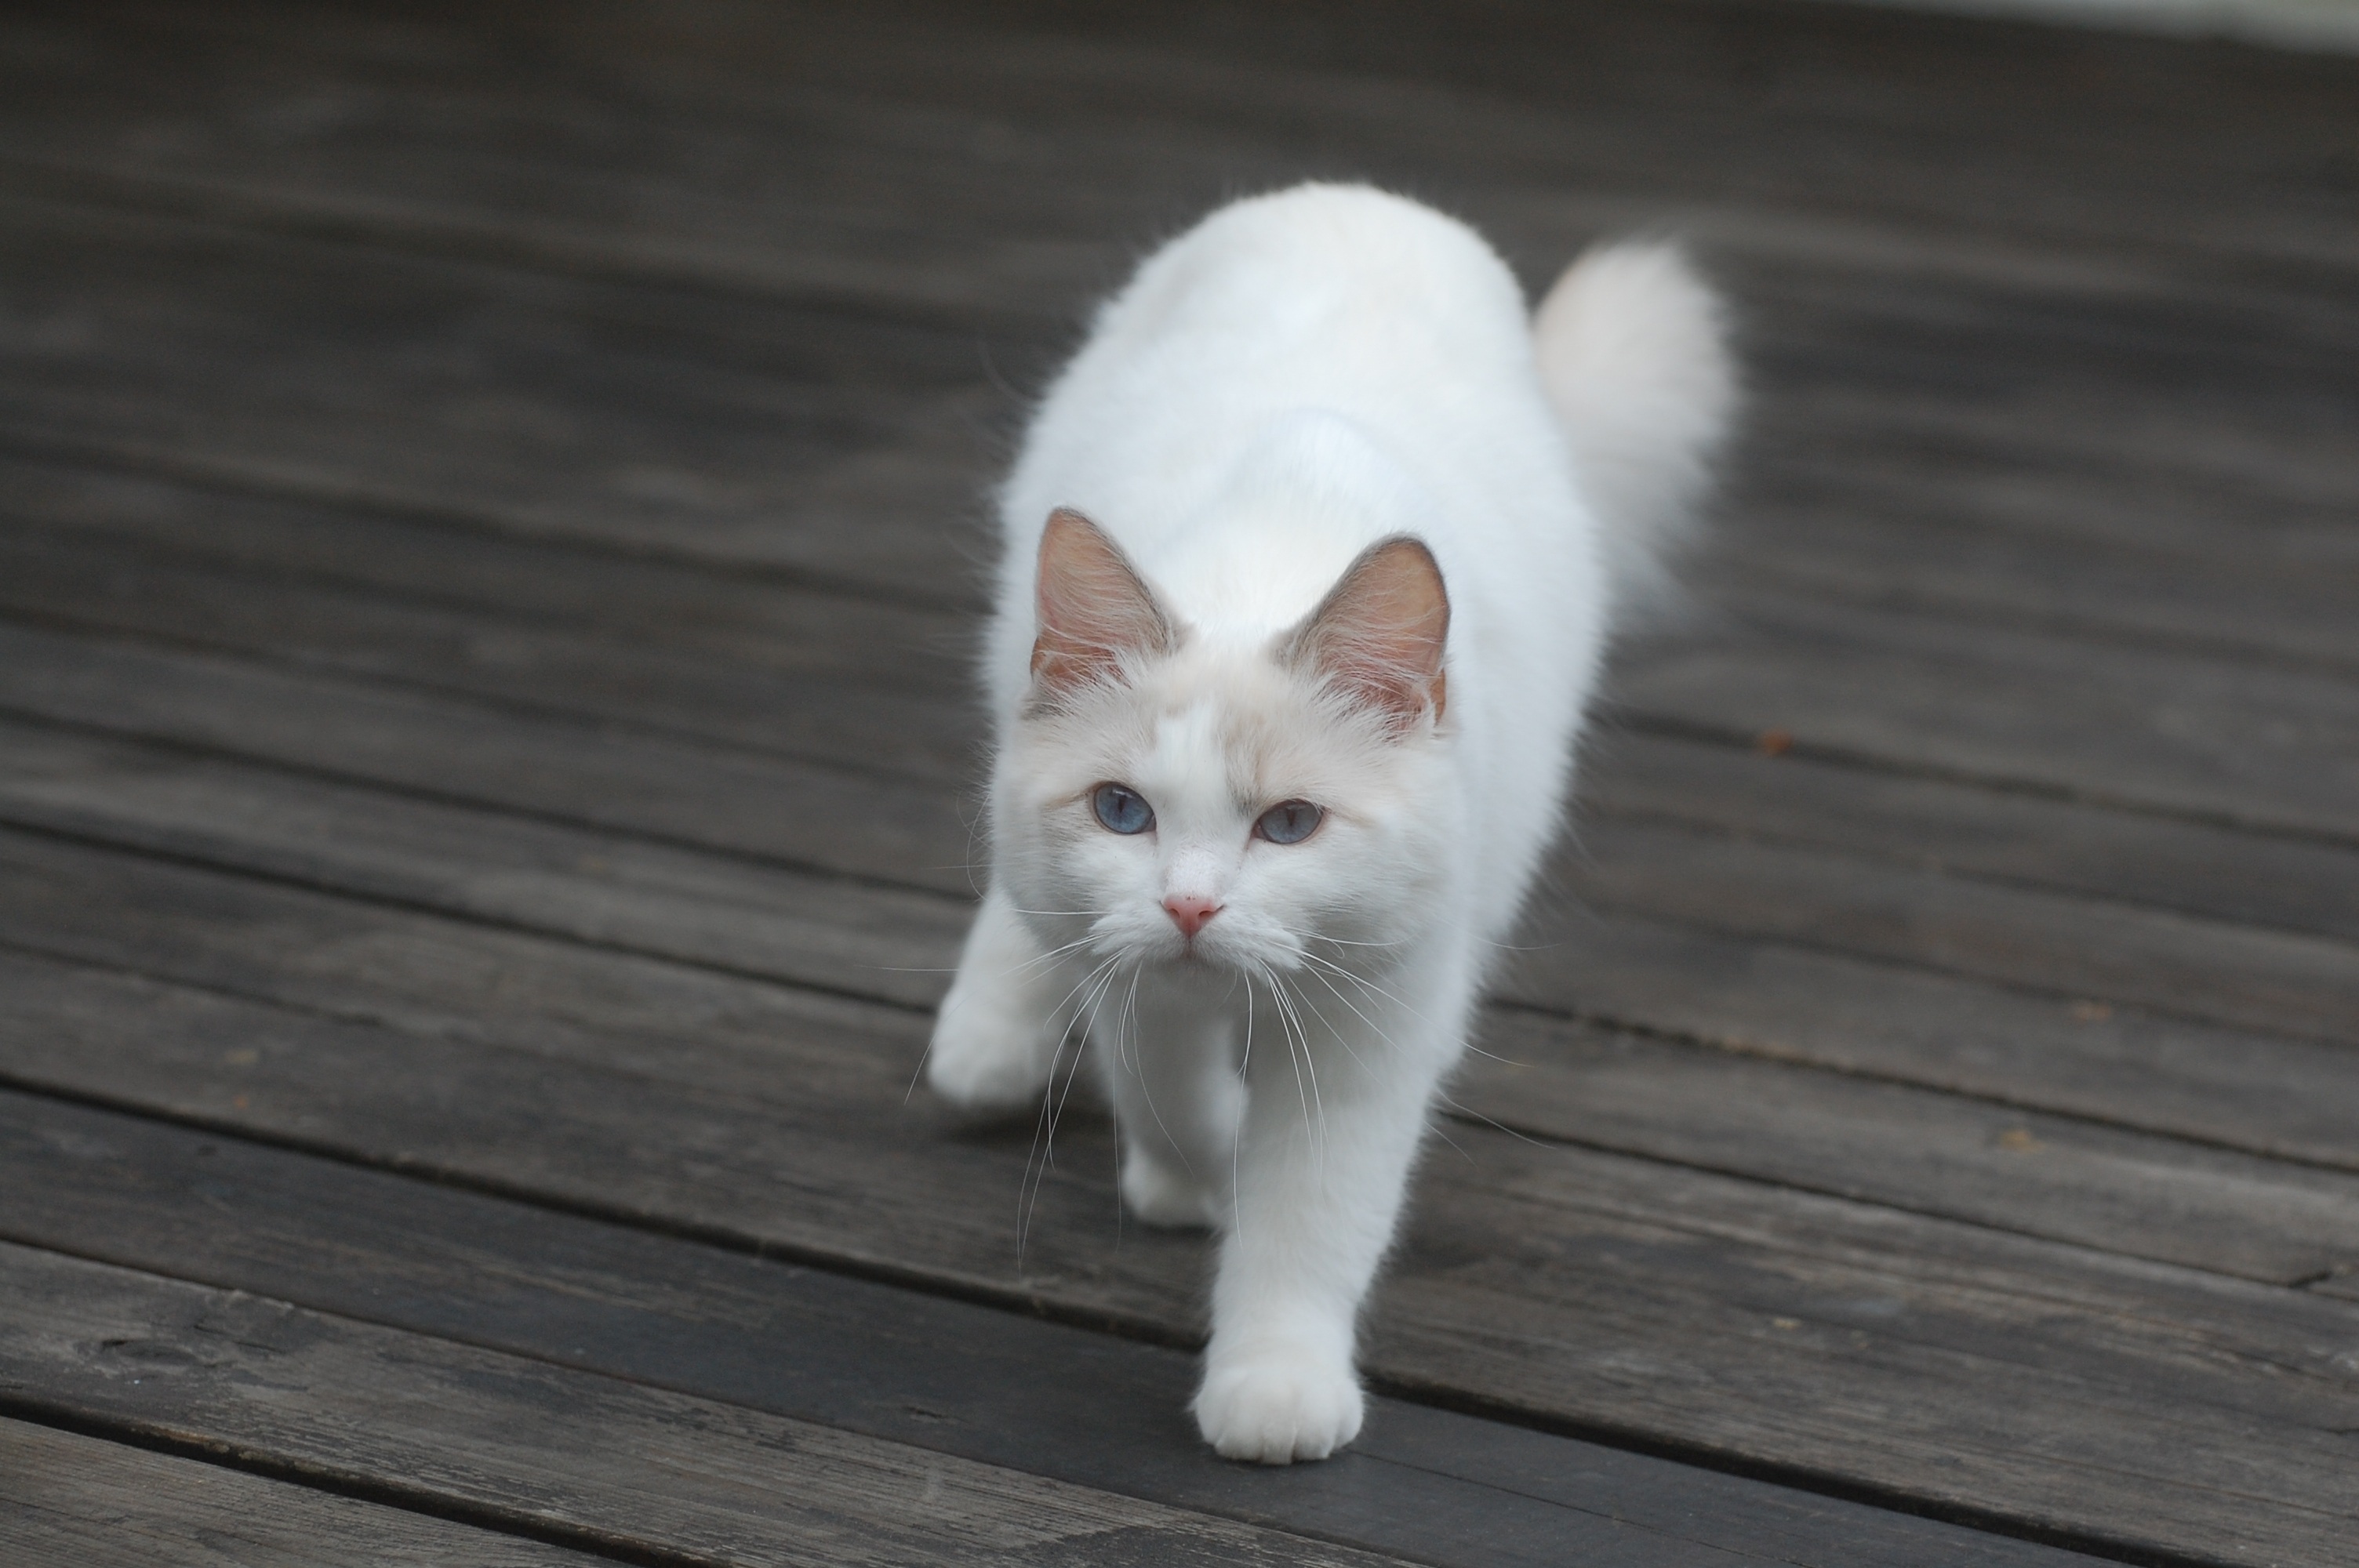 Возьму белую кошку. Белый кот. Белые коты. Обычный белый кот. Белая кошечка игривая.